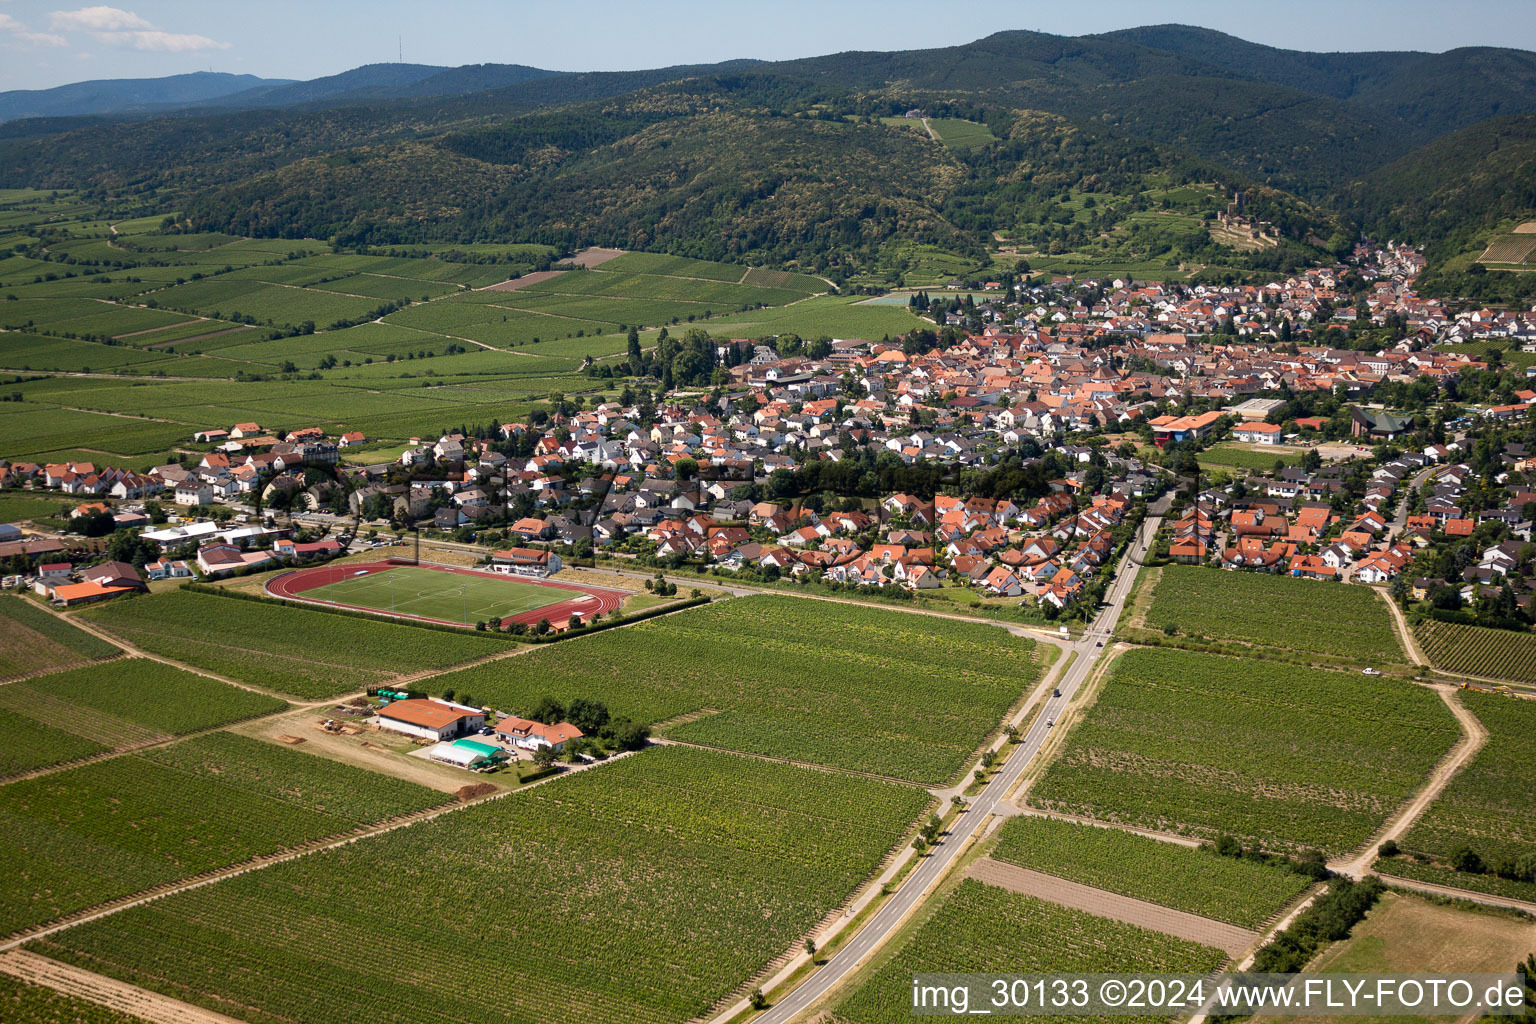 Aerial view of Wachenheim an der Weinstraße in the state Rhineland-Palatinate, Germany